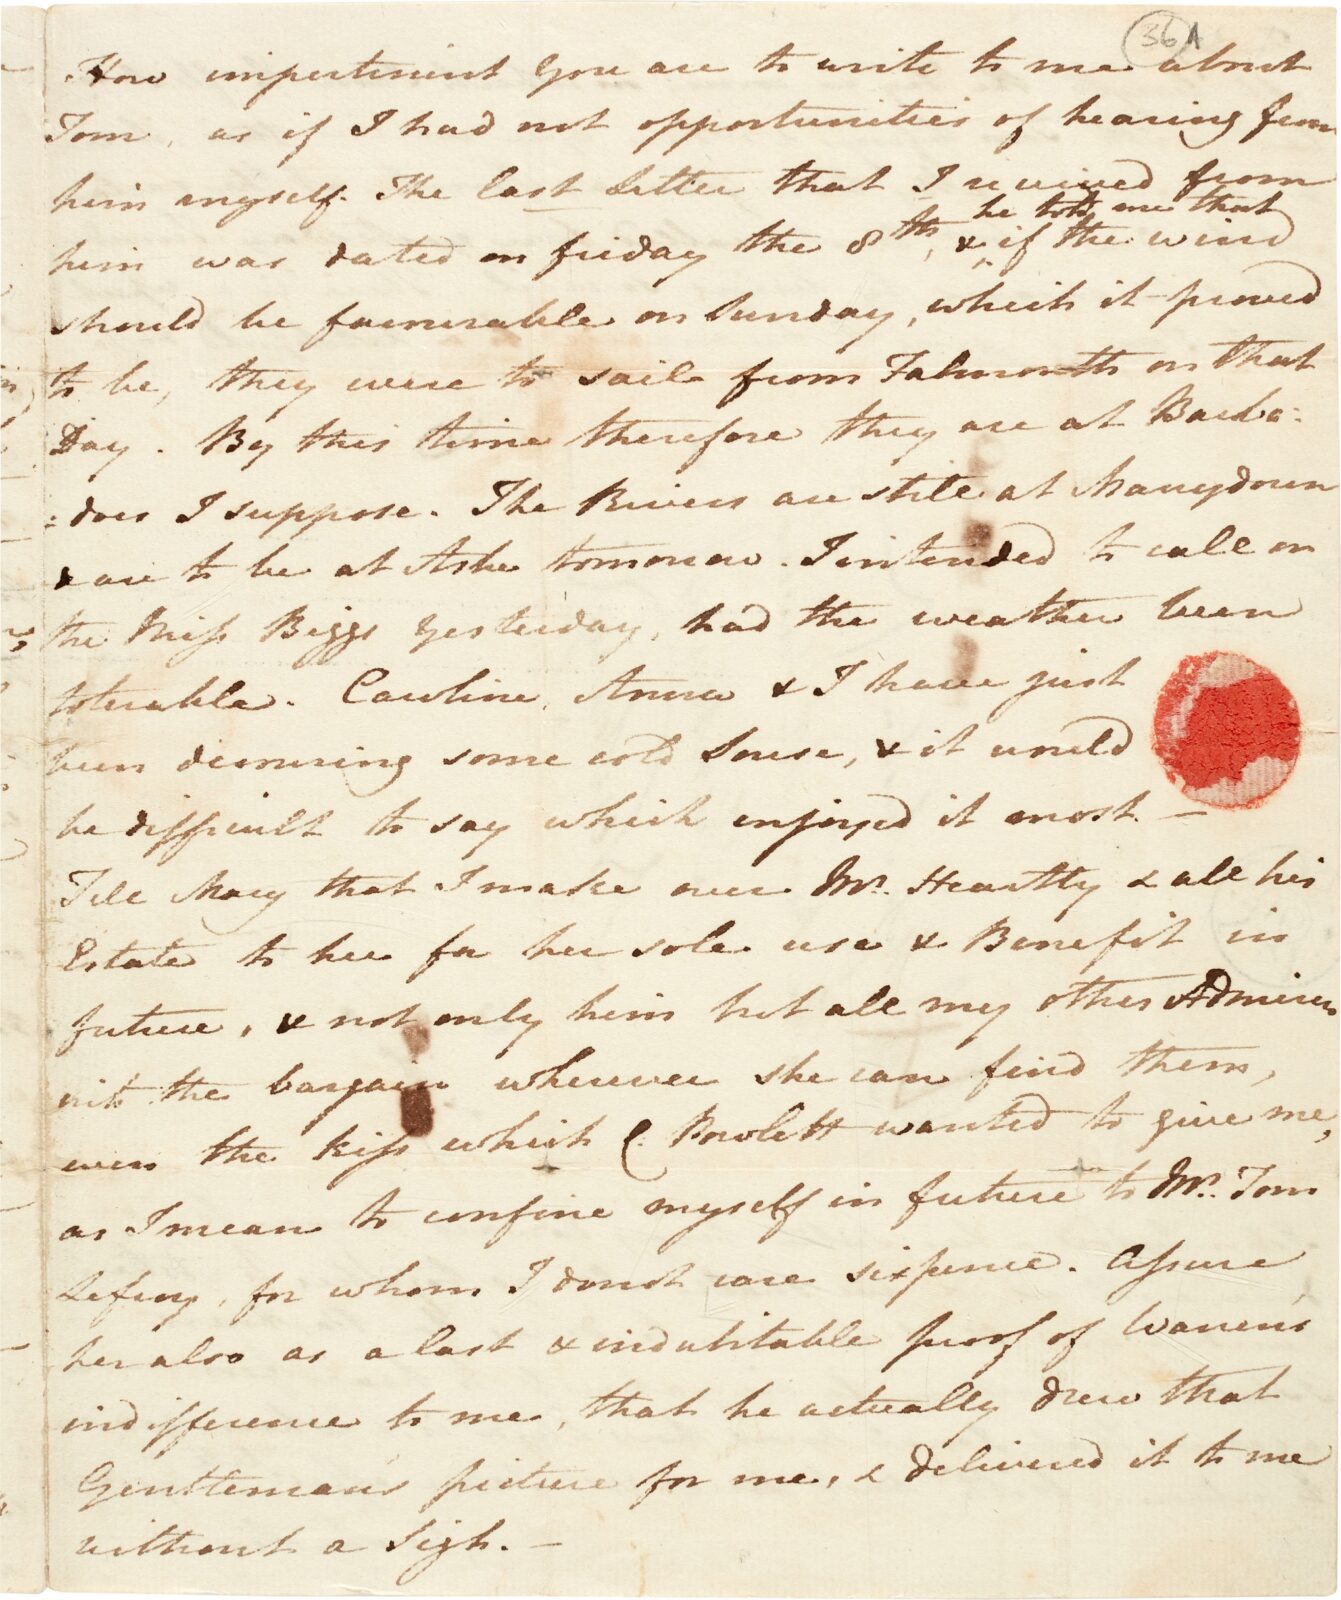 Jane Austen letter